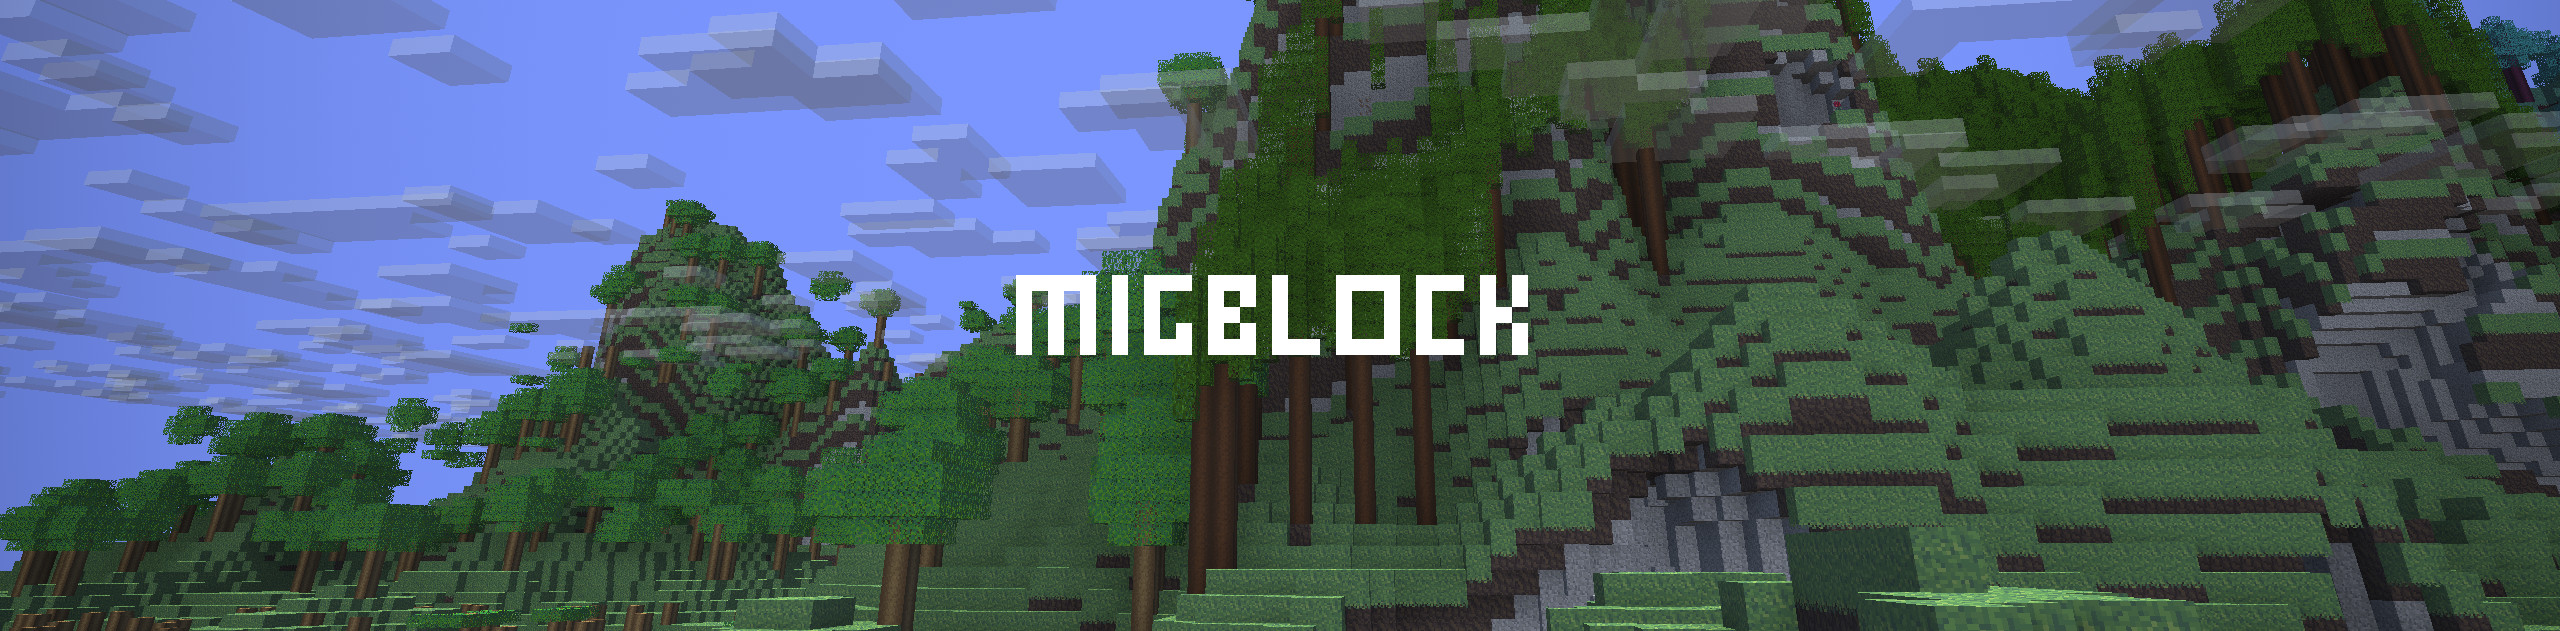 Migblock